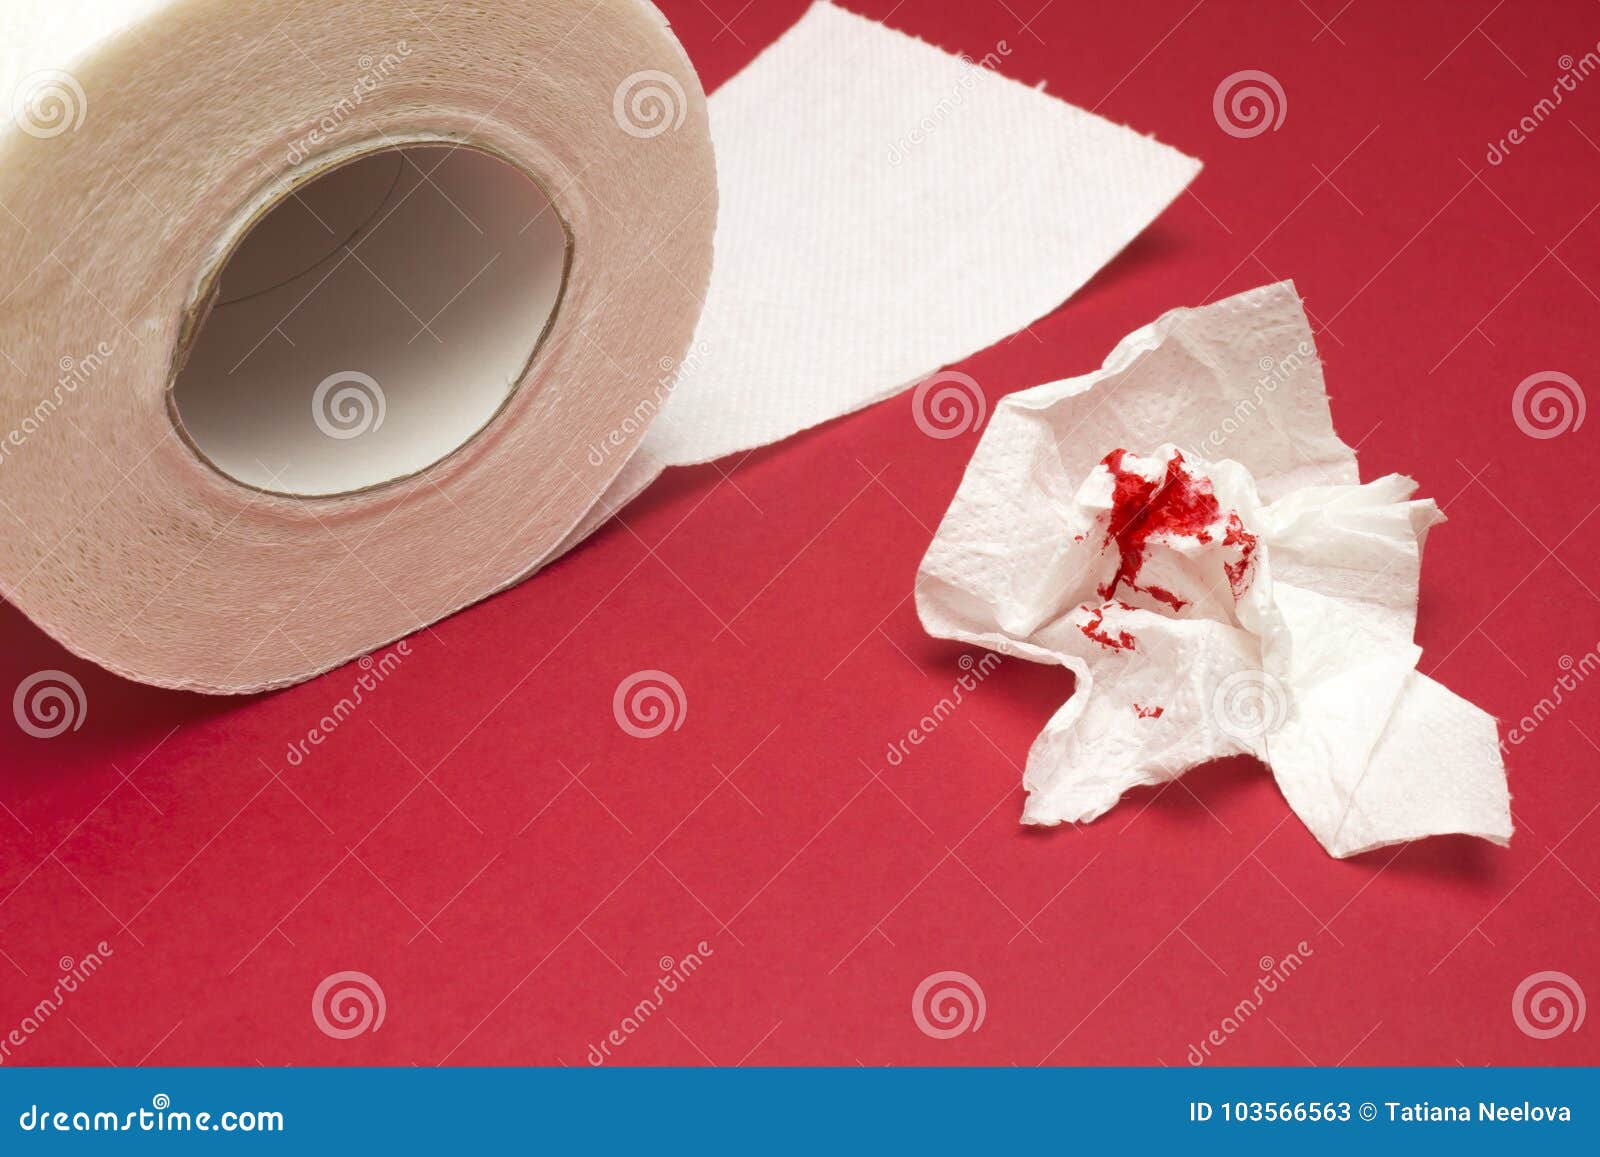 Кровь после вытирания бумагой